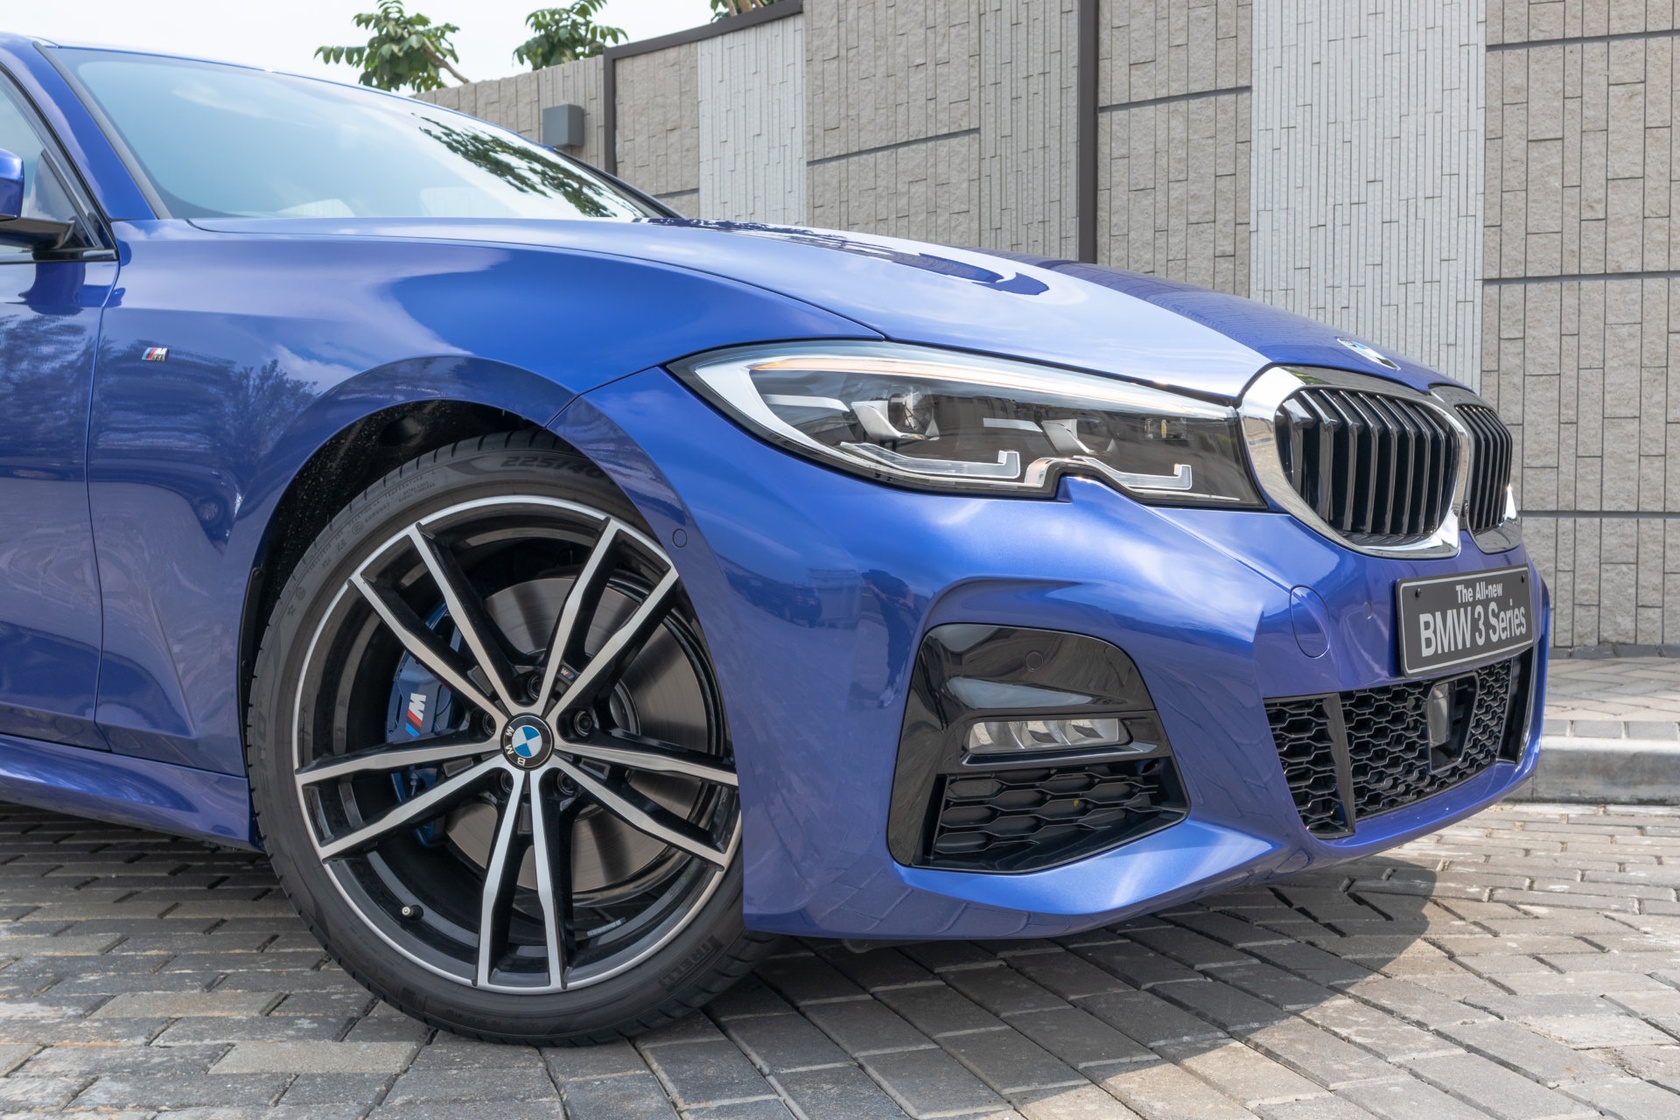 Internetowy Samochód Roku 2020: BMW seria 3